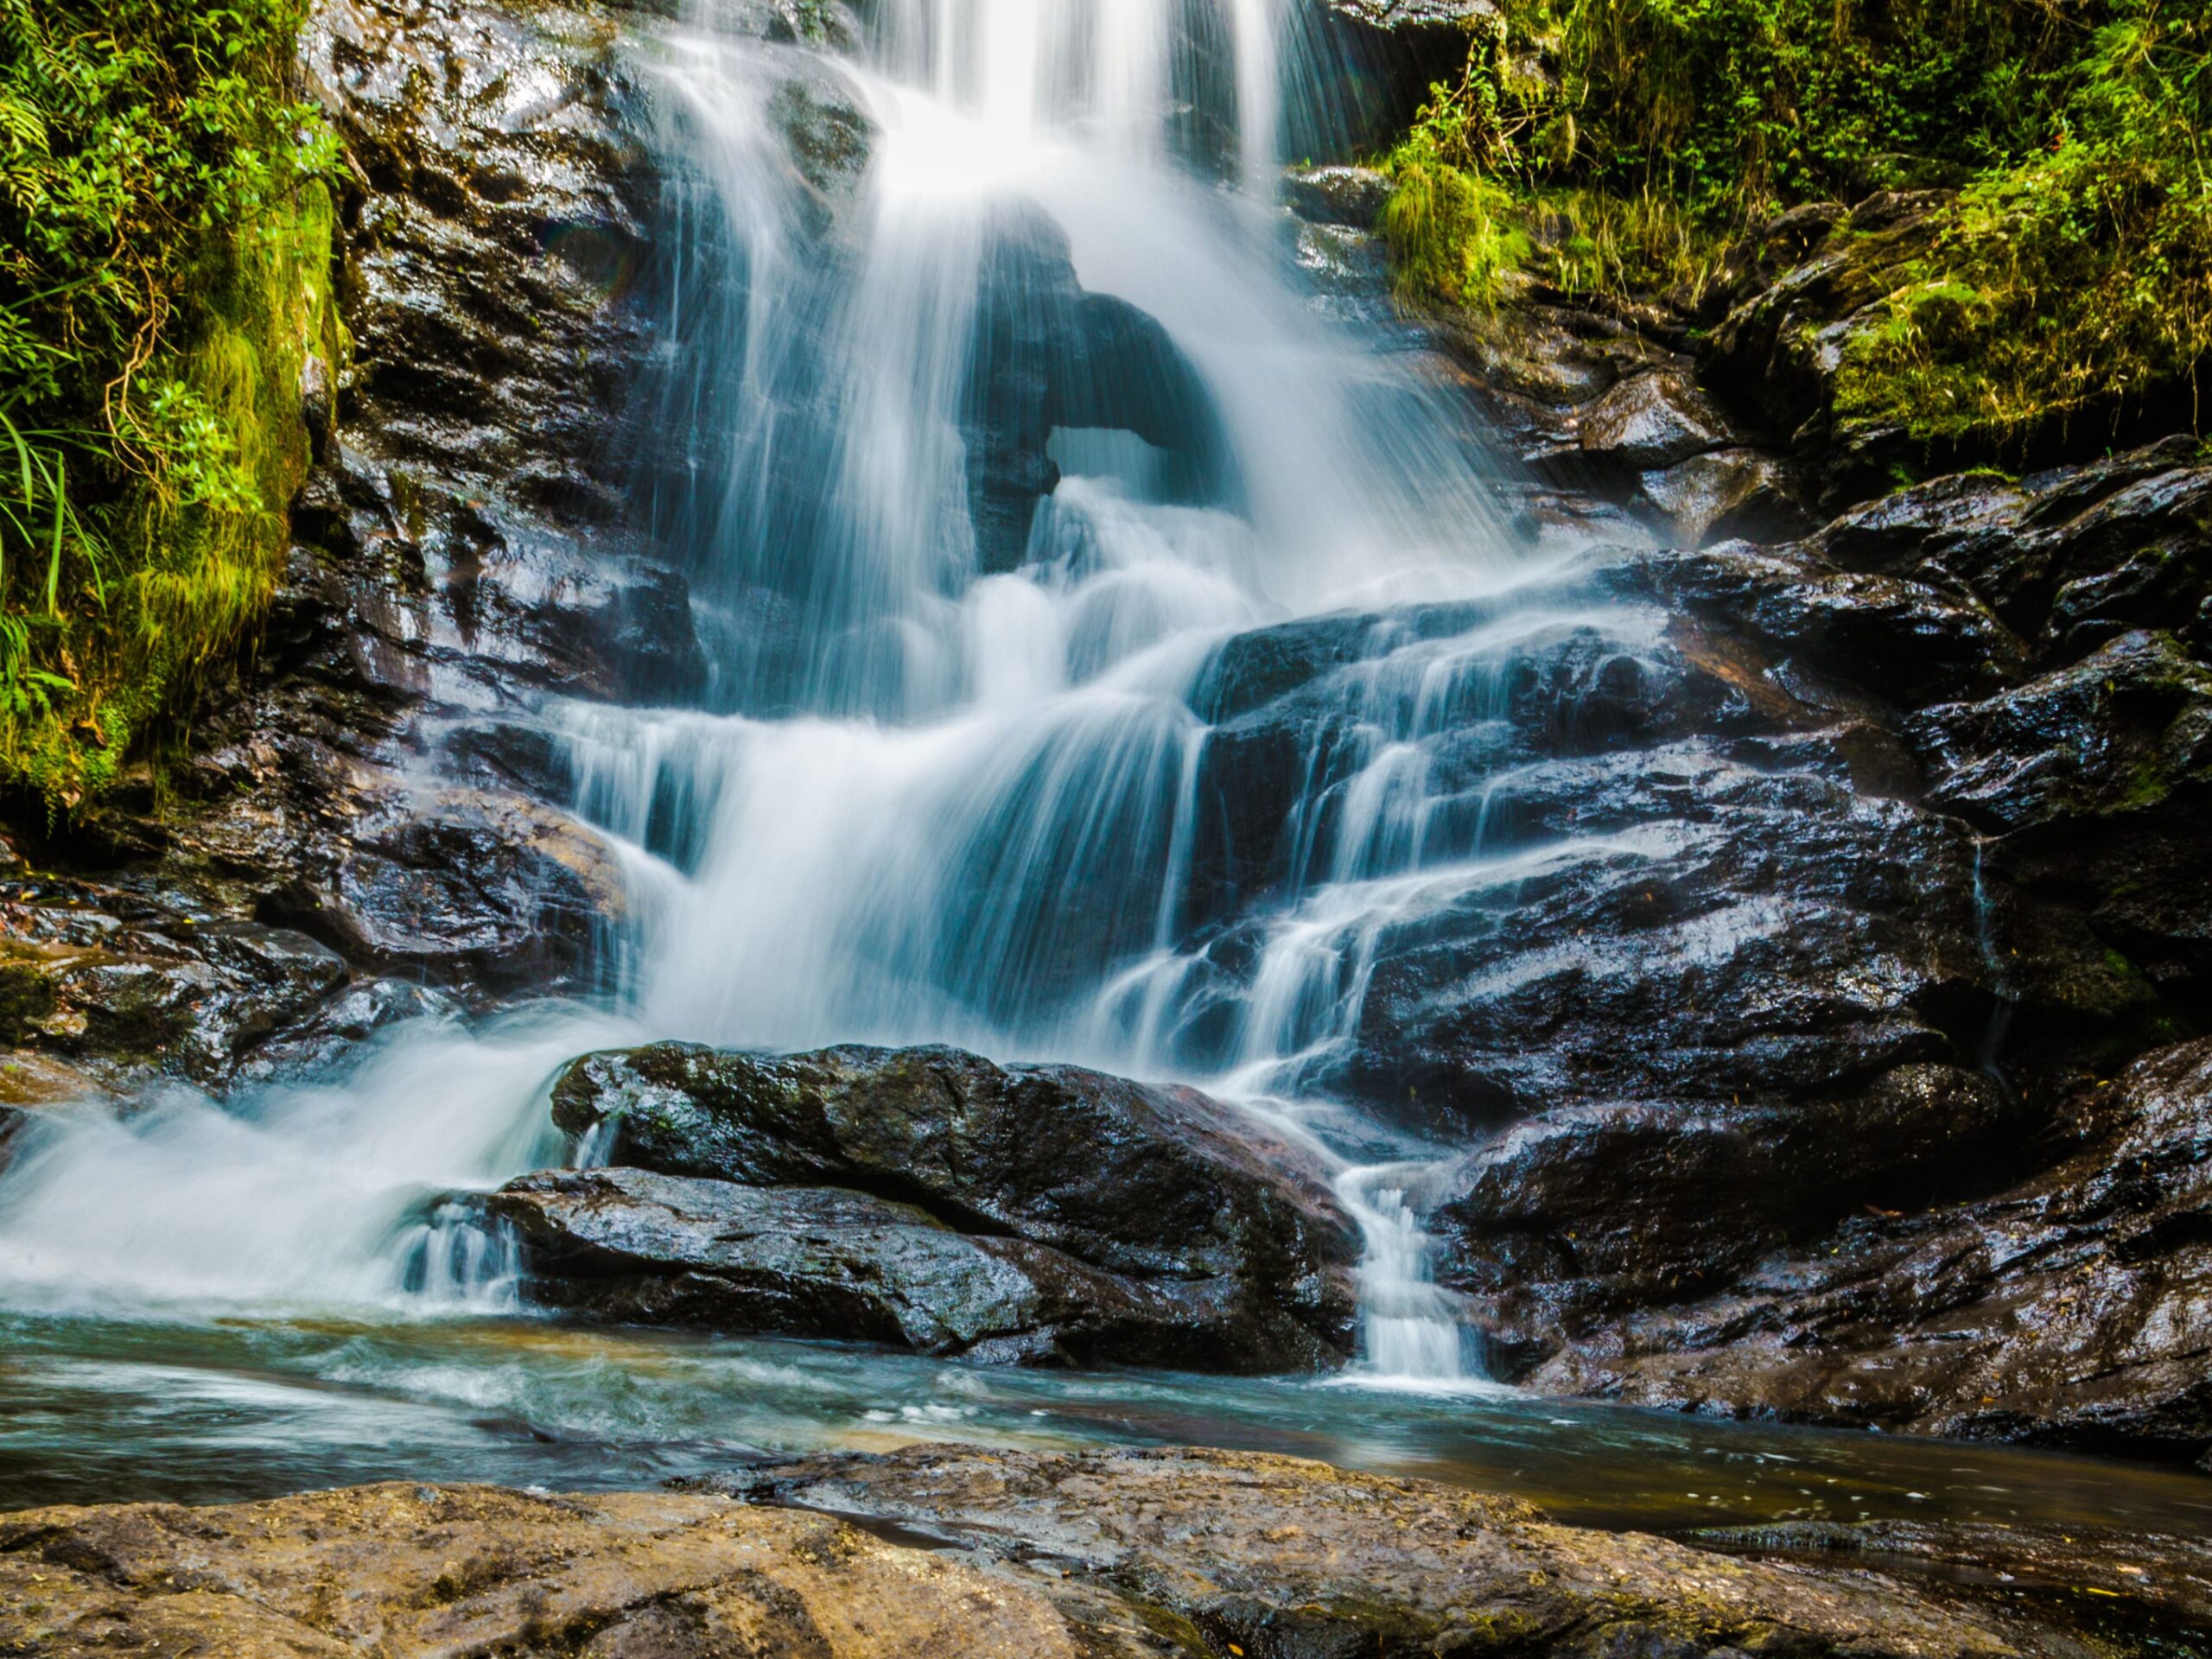 As cachoeiras são destaque do ecoturismo mineiro. Foto: banco de imagens livres do Canva 